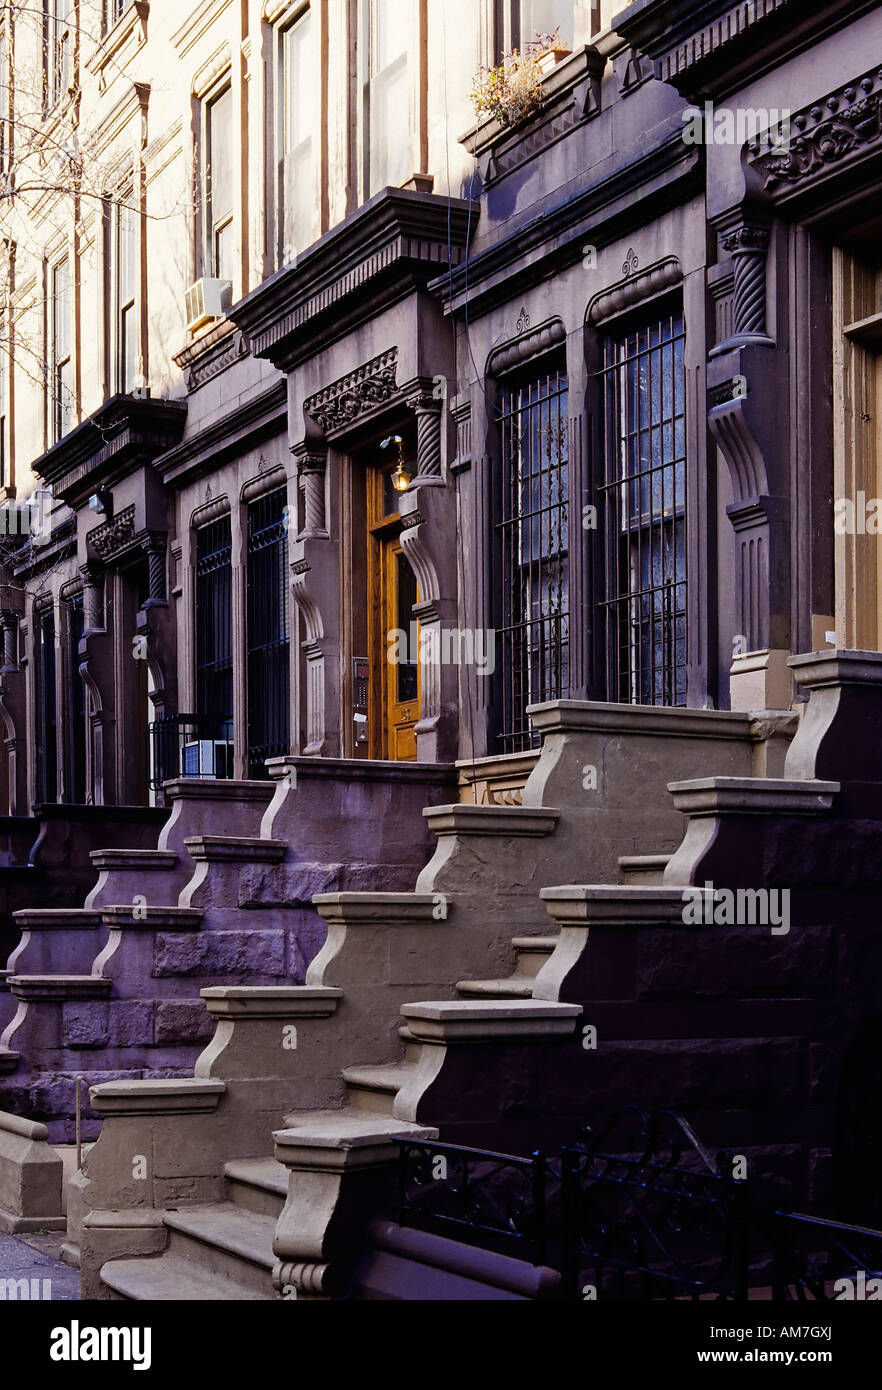 Escaliers en pierre marron, maisons mitoyennes du début du XXe siècle, Central Park West, New York City, Etats-Unis Banque D'Images